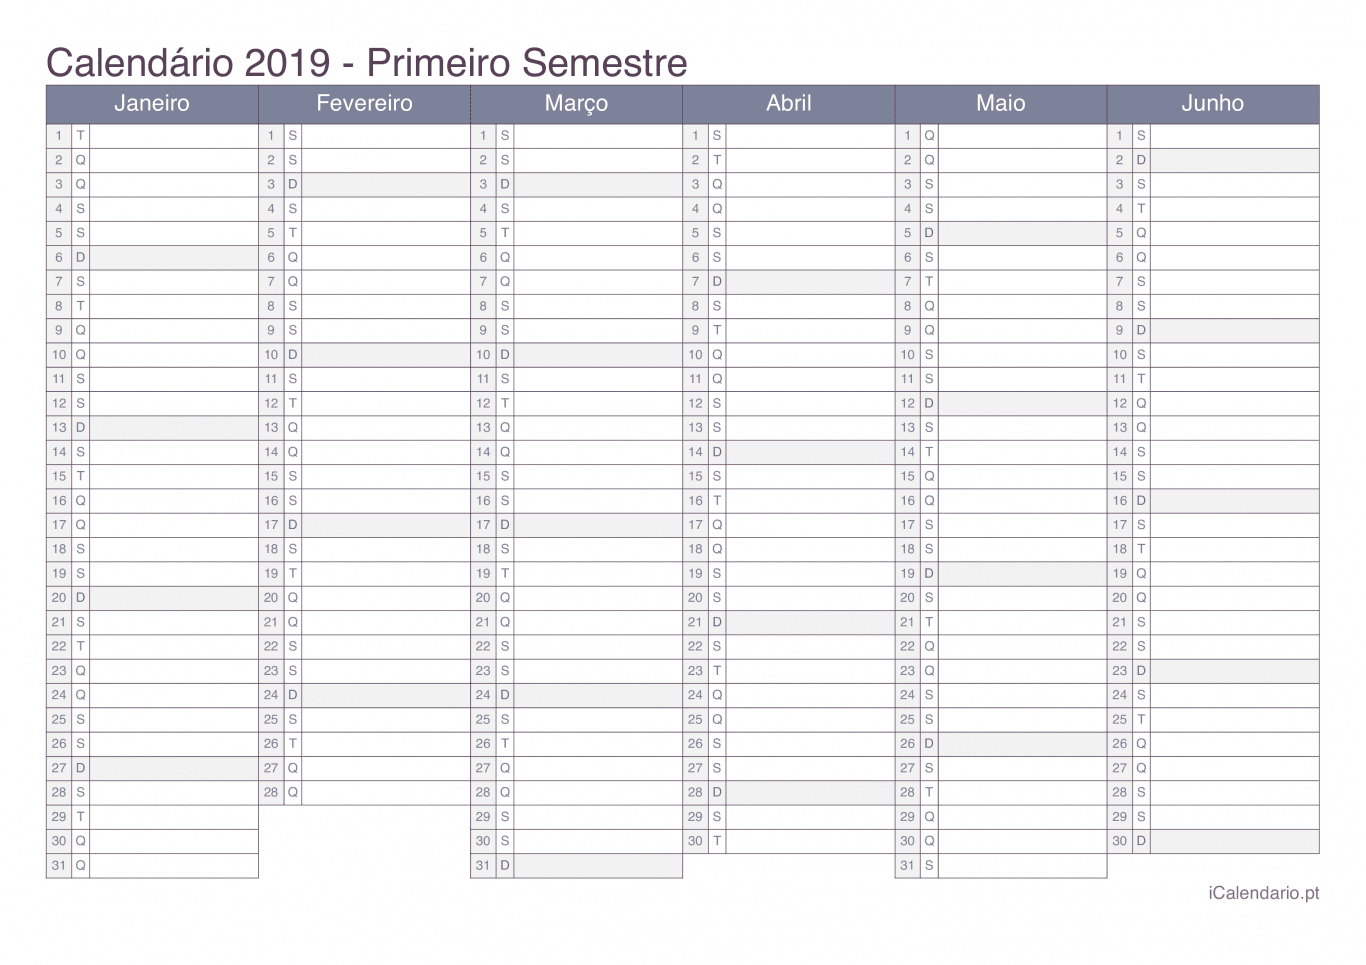 Calendário por semestre 2019 - Office